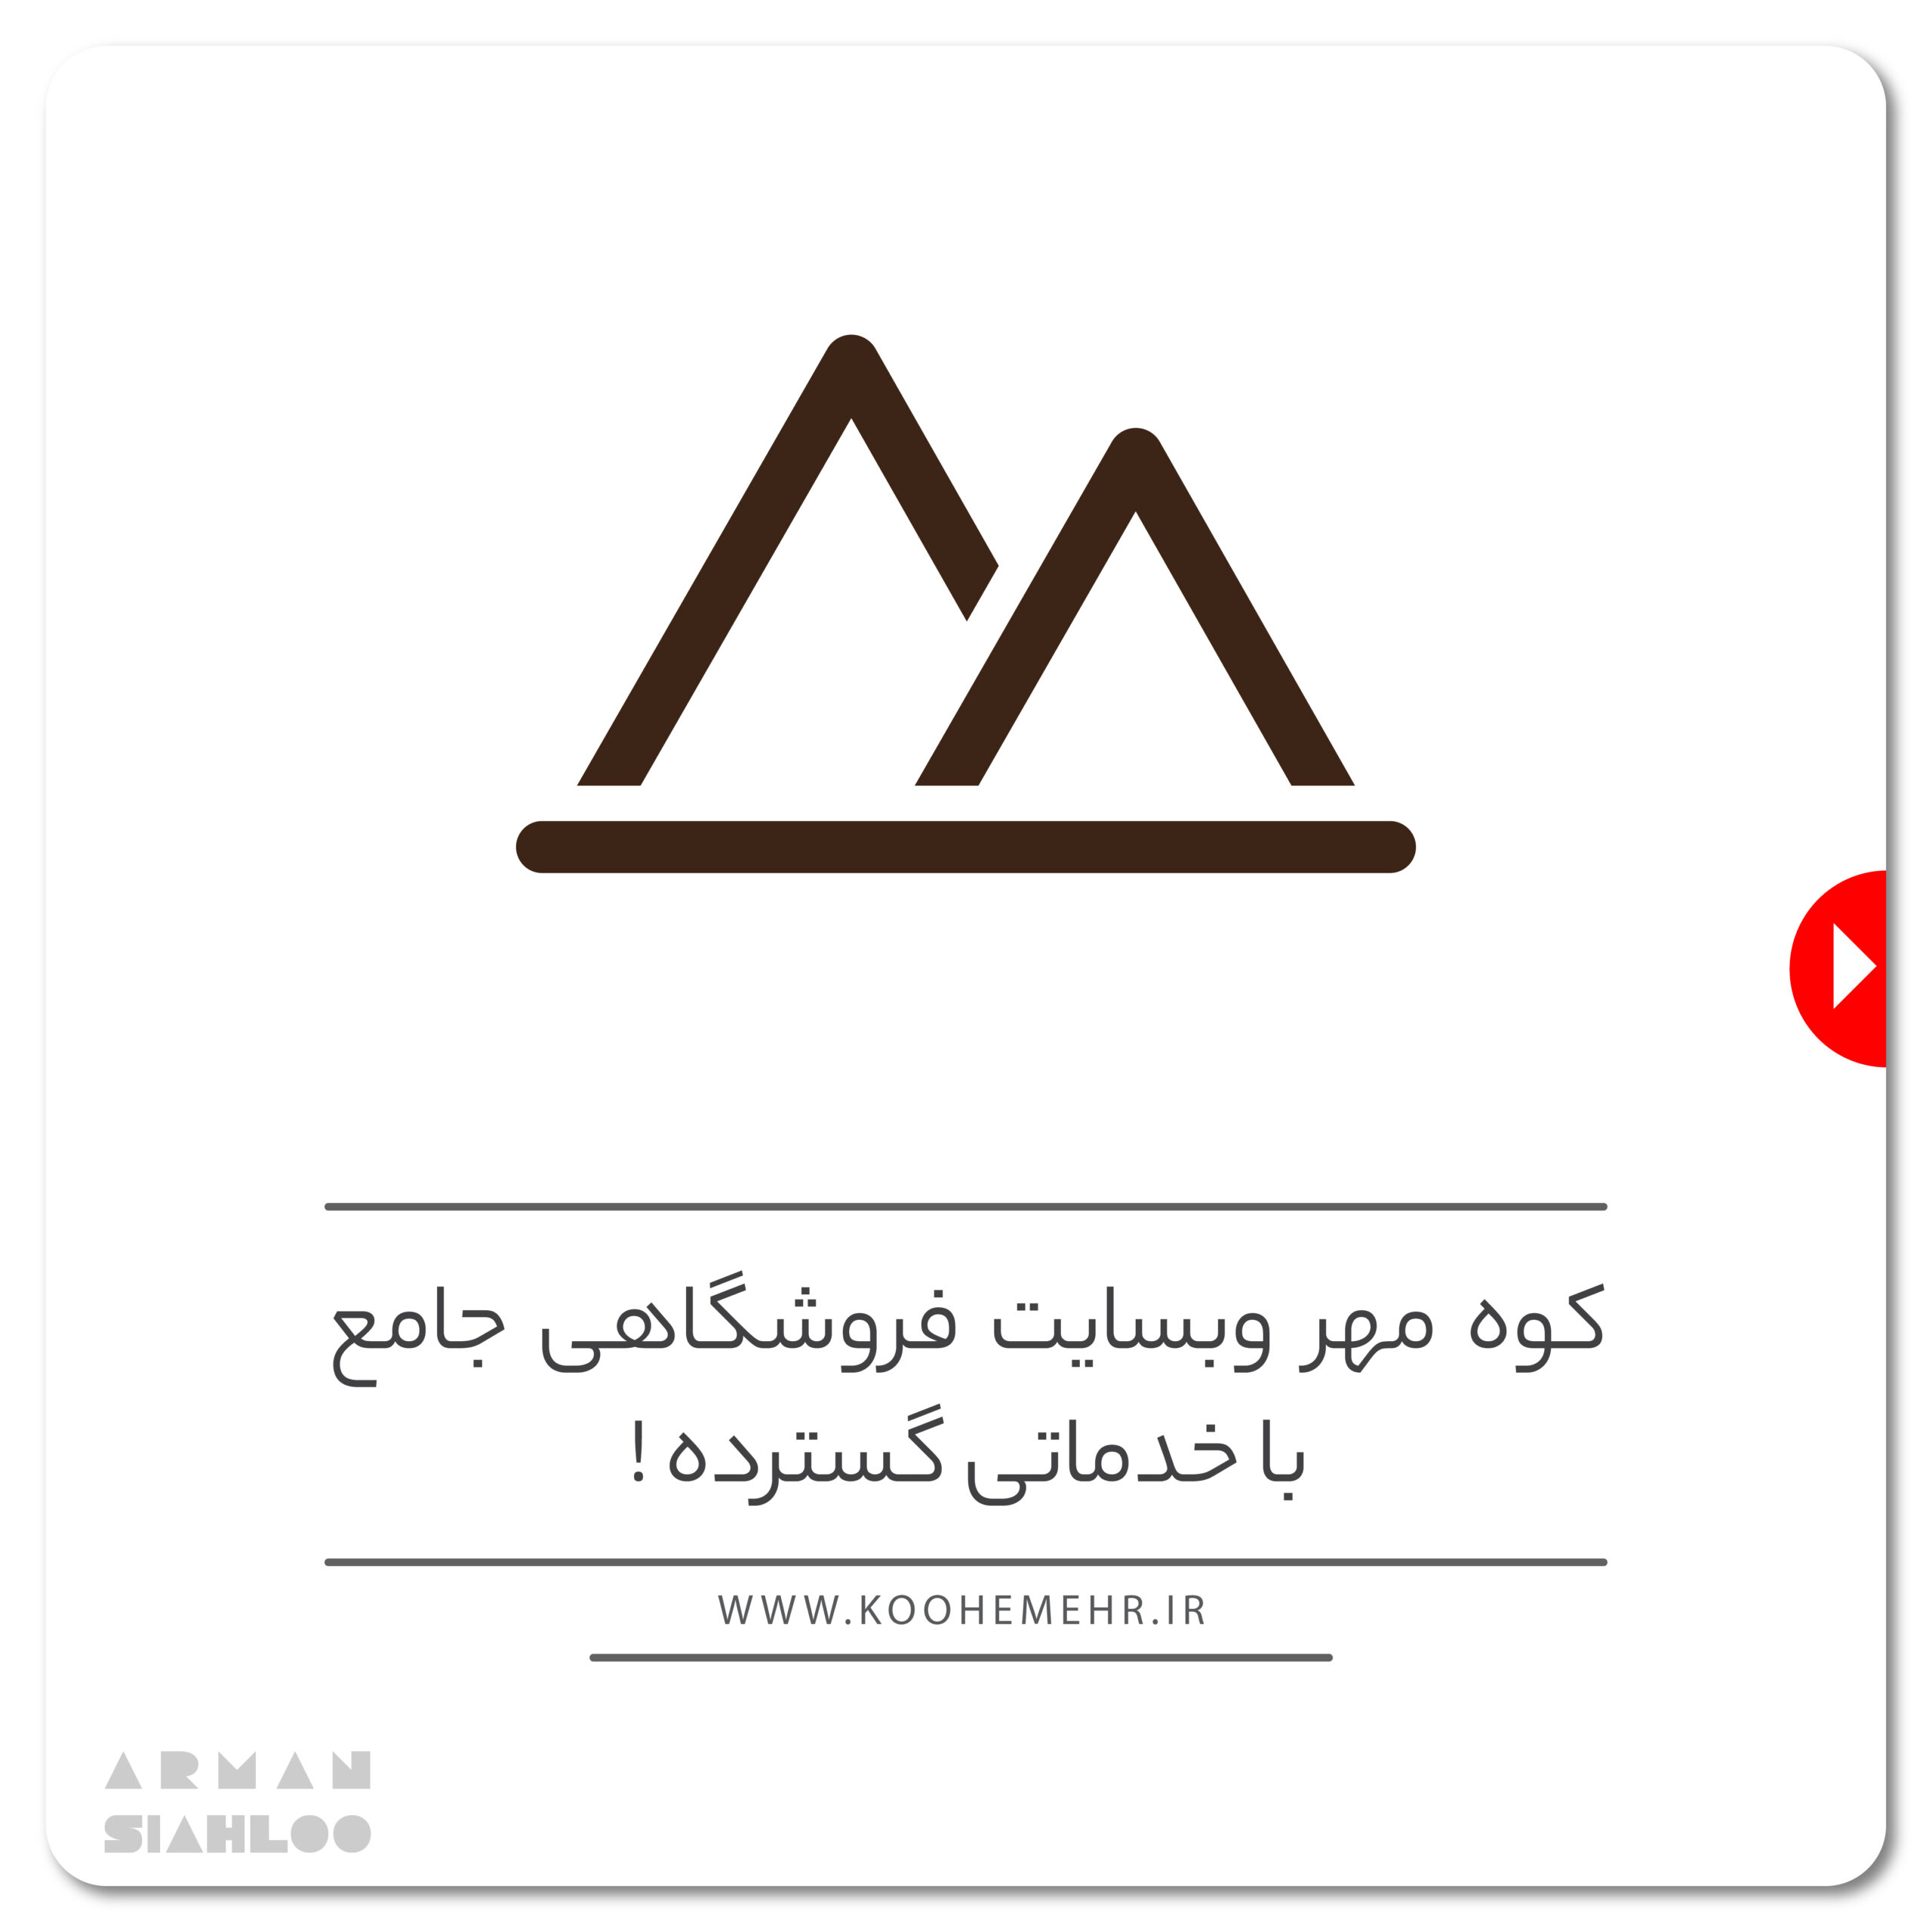 طراحی سایت فروشگاه جامع کوه مهر